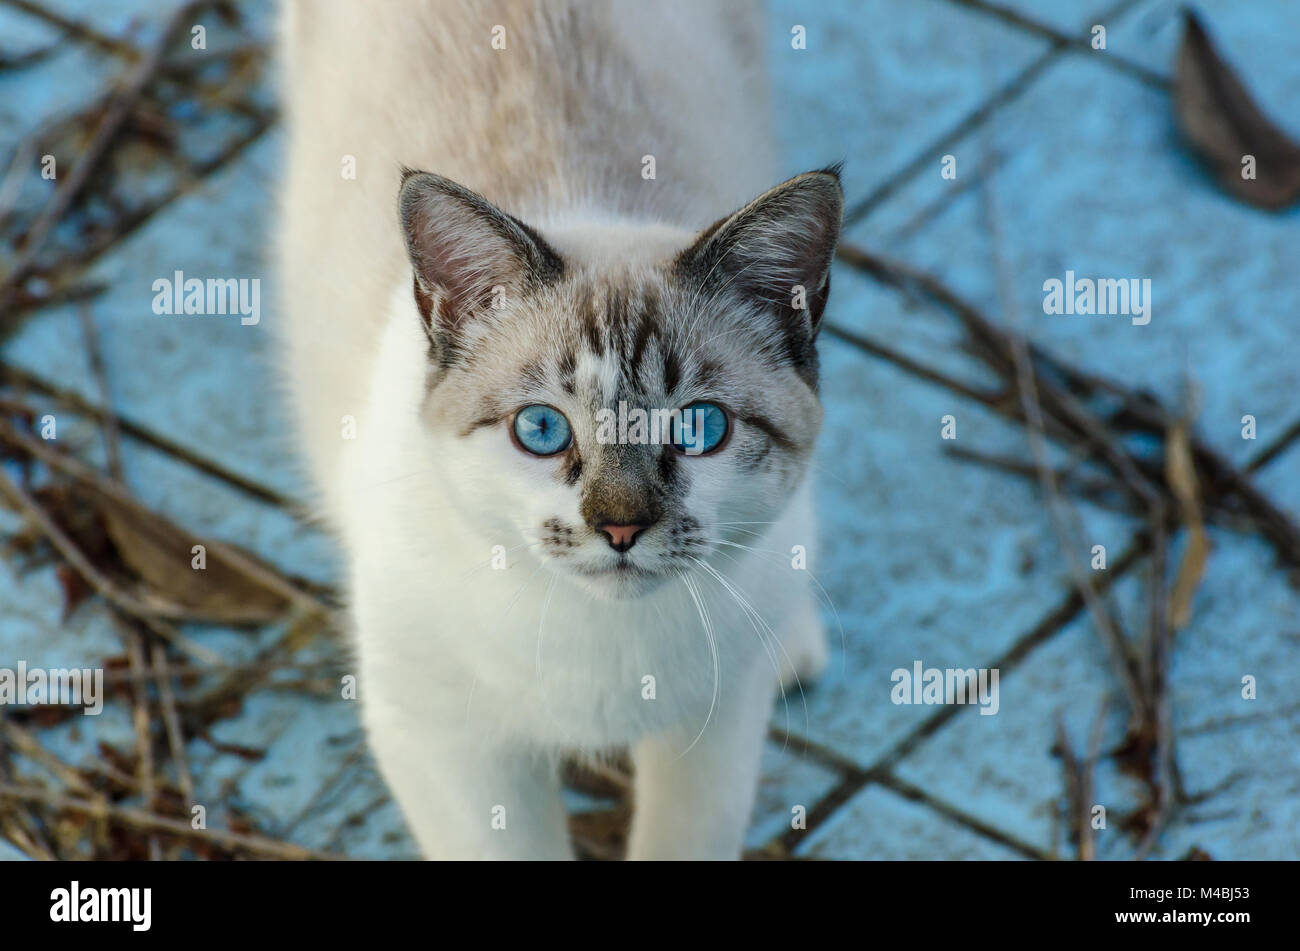 Lindo gato con ojos azules reproduciendo dentro de una piscina vacía Foto de stock